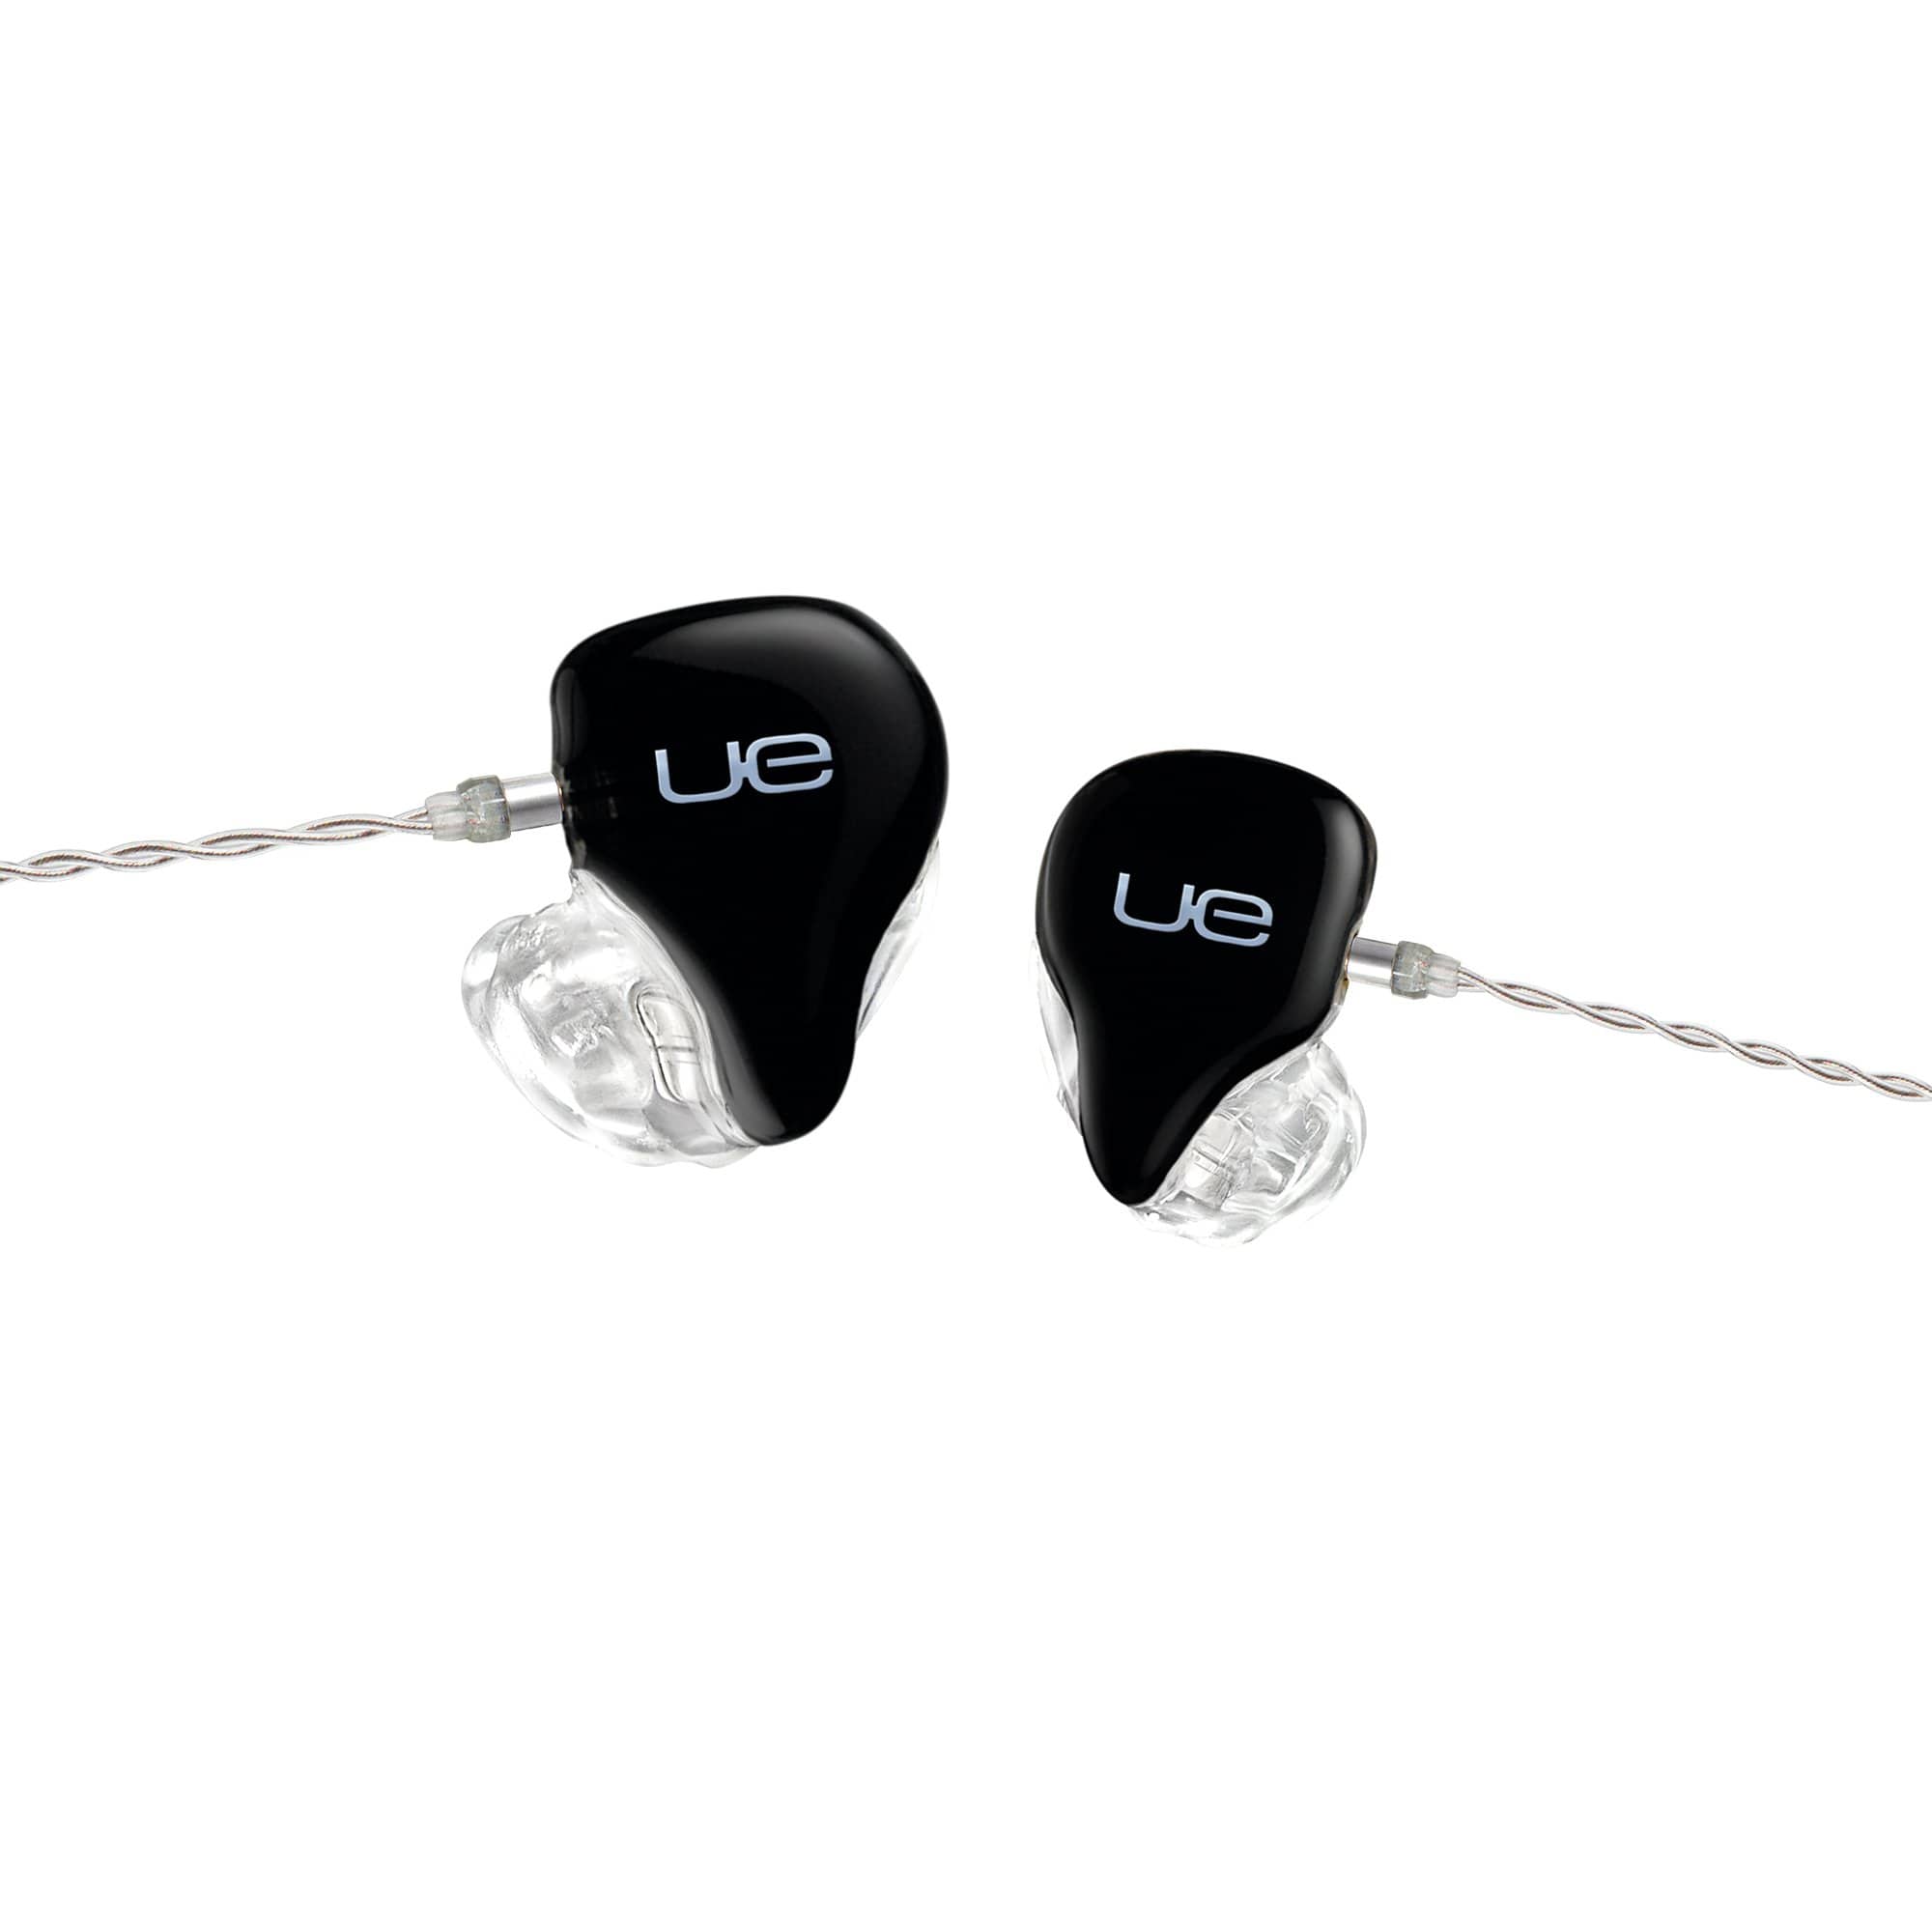 Ultimate Ears UE 11 Pro In Ear Monitors Review!